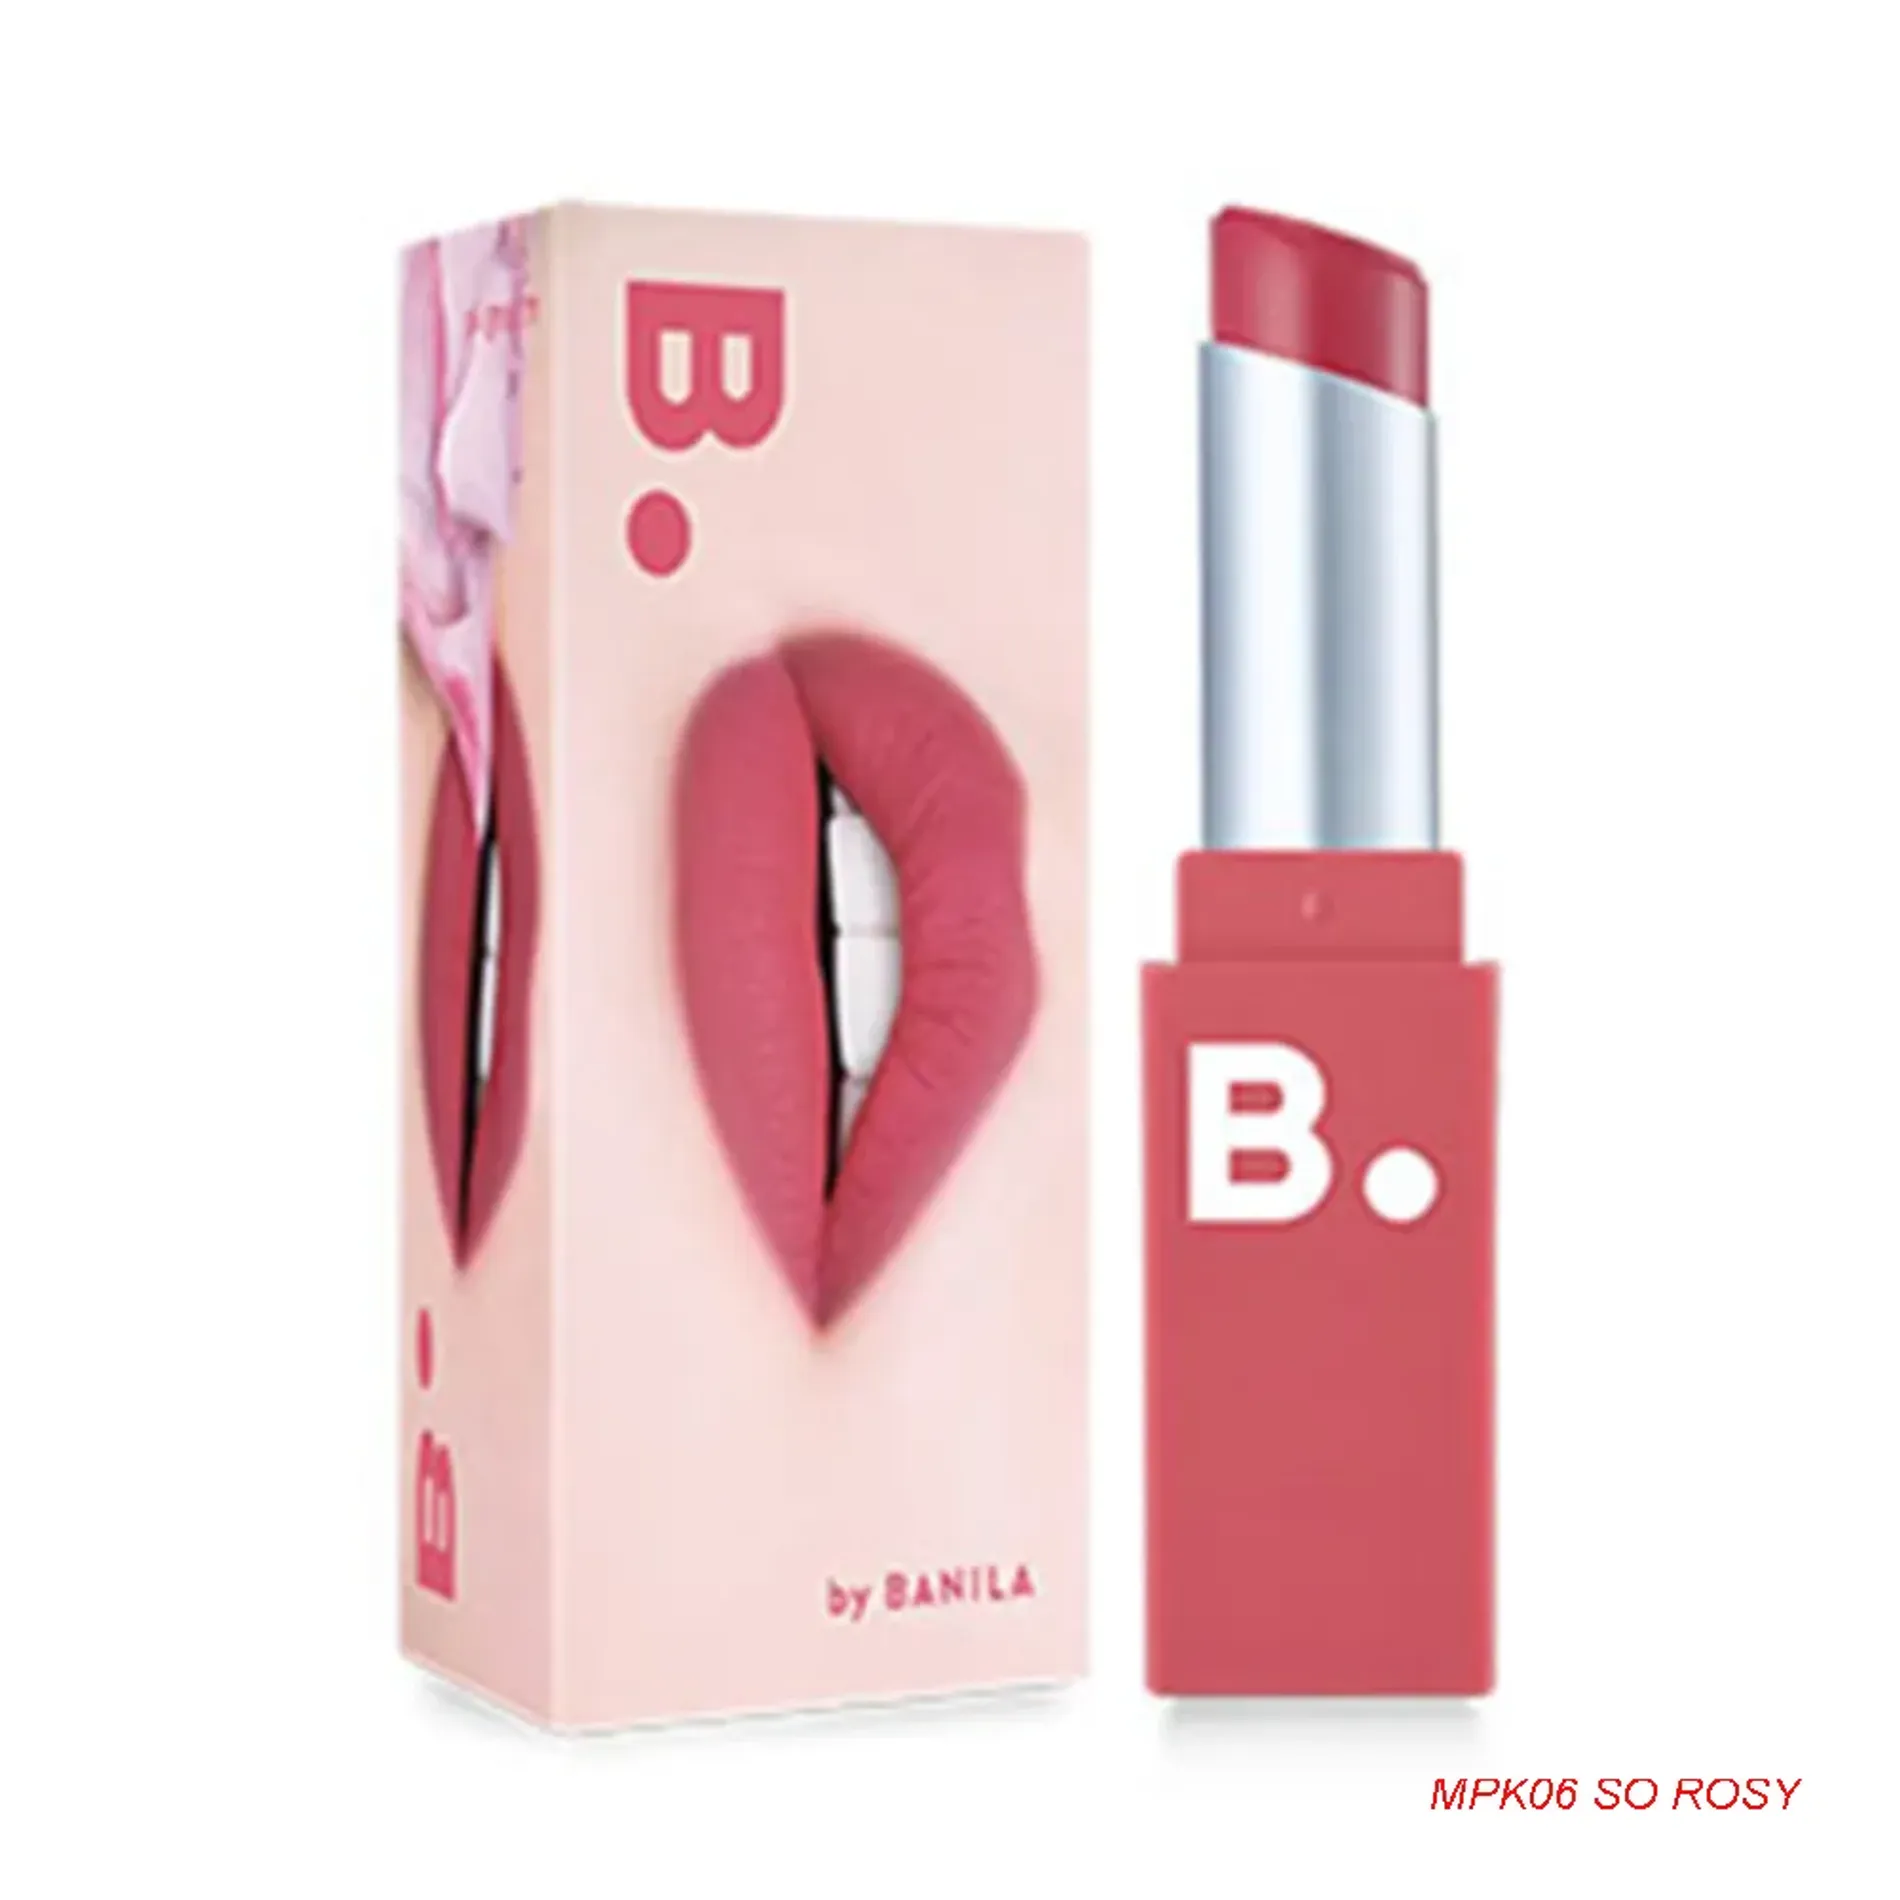 son-moi-b-by-banila-lipdraw-matte-blast-lipstick-4-2g-12